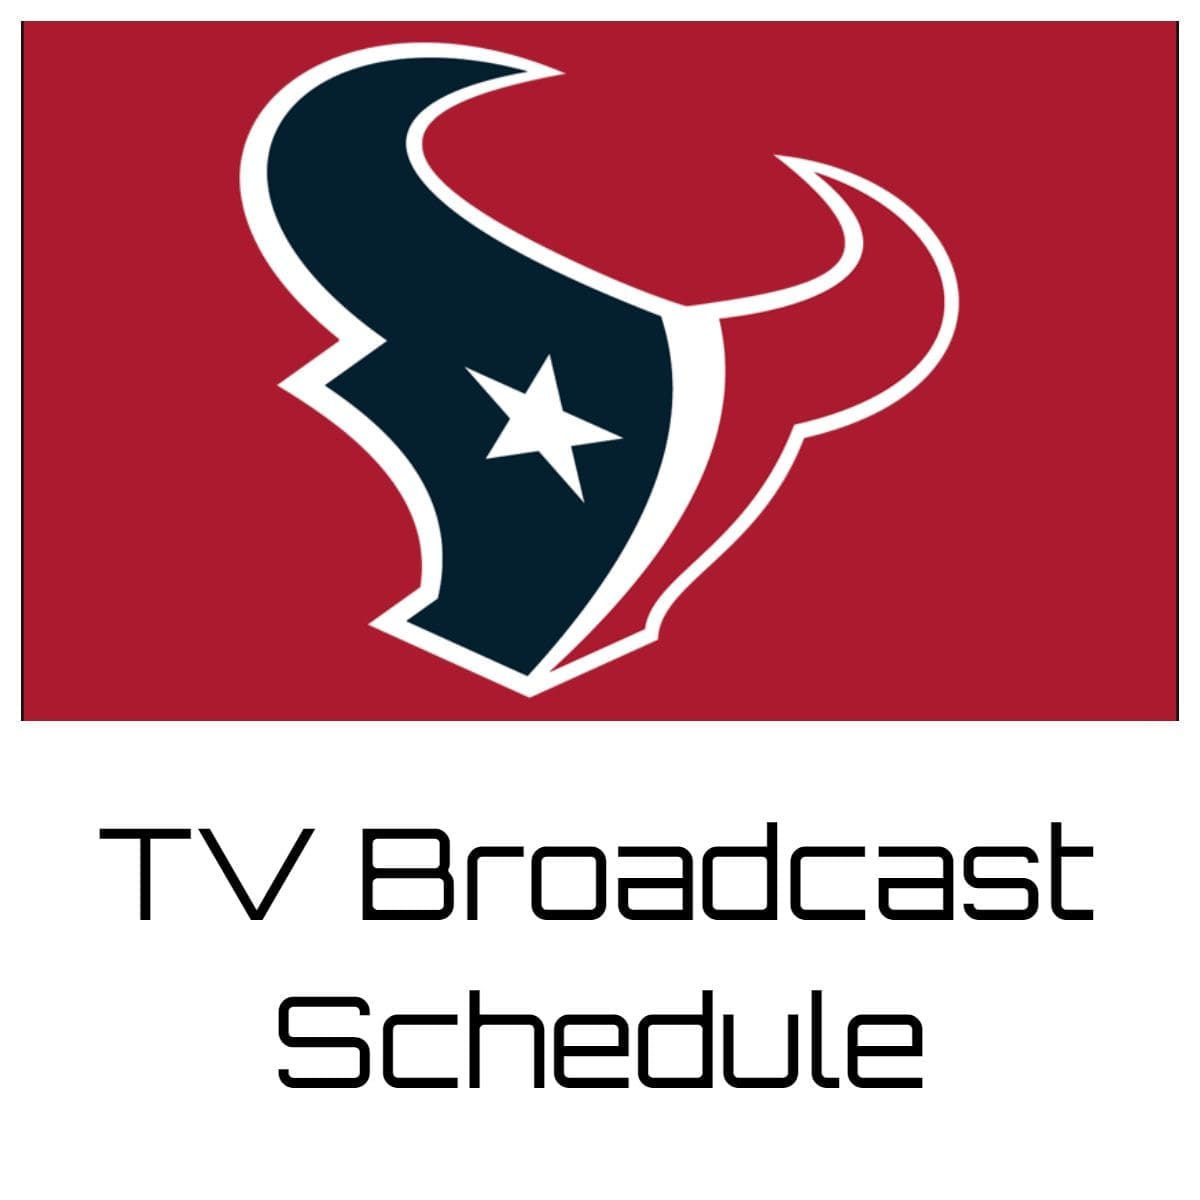 Houston Texans TV Broadcast Schedule